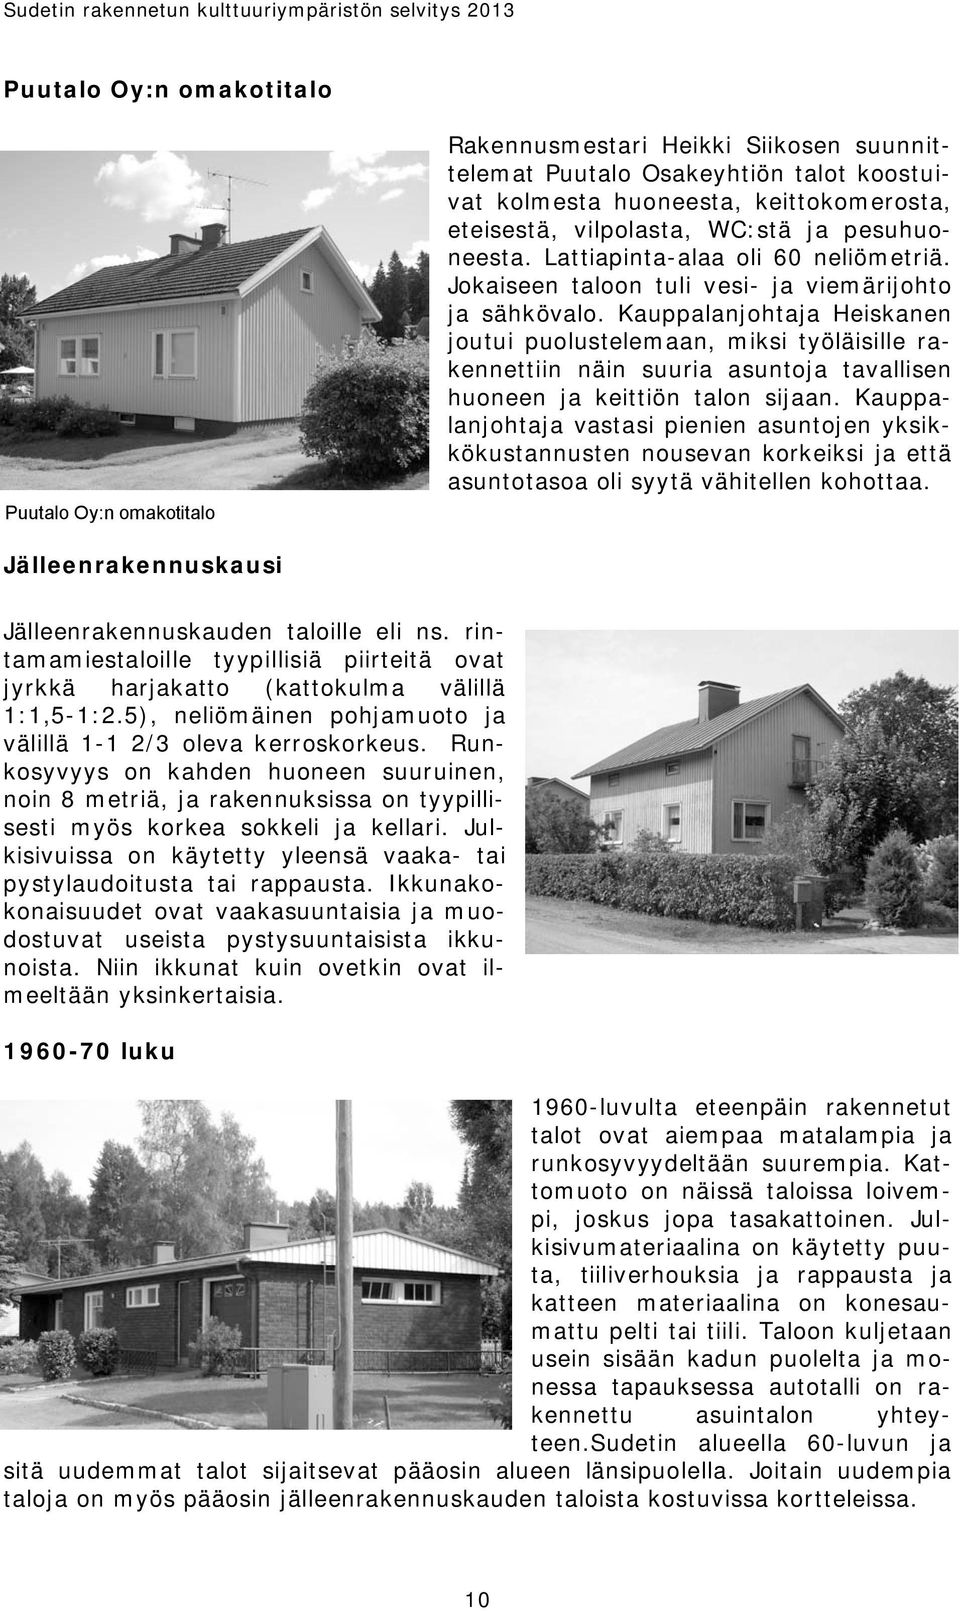 Kauppalanjohtaja Heiskanen joutui puolustelemaan, miksi työläisille rakennettiin näin suuria asuntoja tavallisen huoneen ja keittiön talon sijaan.